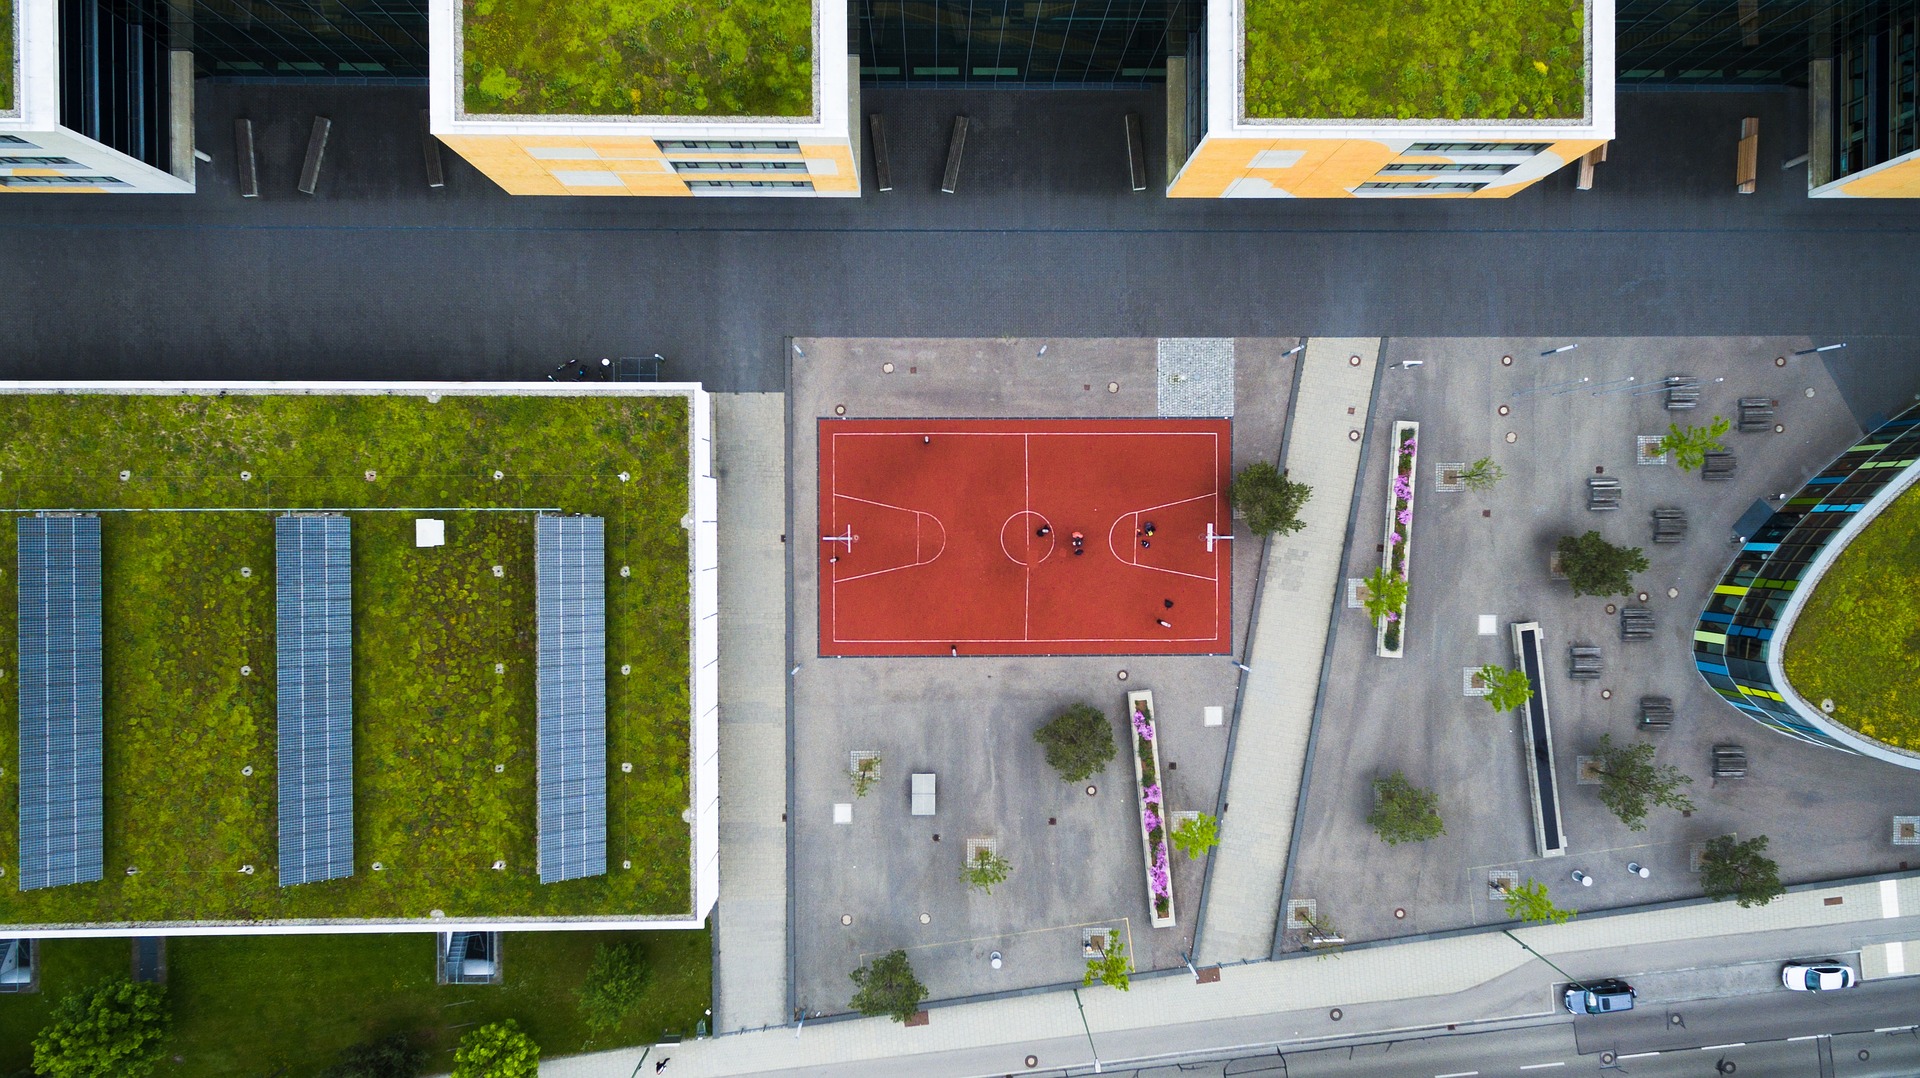 Grüne Dächer und Photovoltaik-Dächer sind sehr wichtig für den Klimaschutz. Der Dachaufbau beeinflusst, ob ein Flachdach zum Klimaschutz beitragen kann. Der neue Bauder Flachdach Navigator hilft bei der Planung. Bild: Pixabay